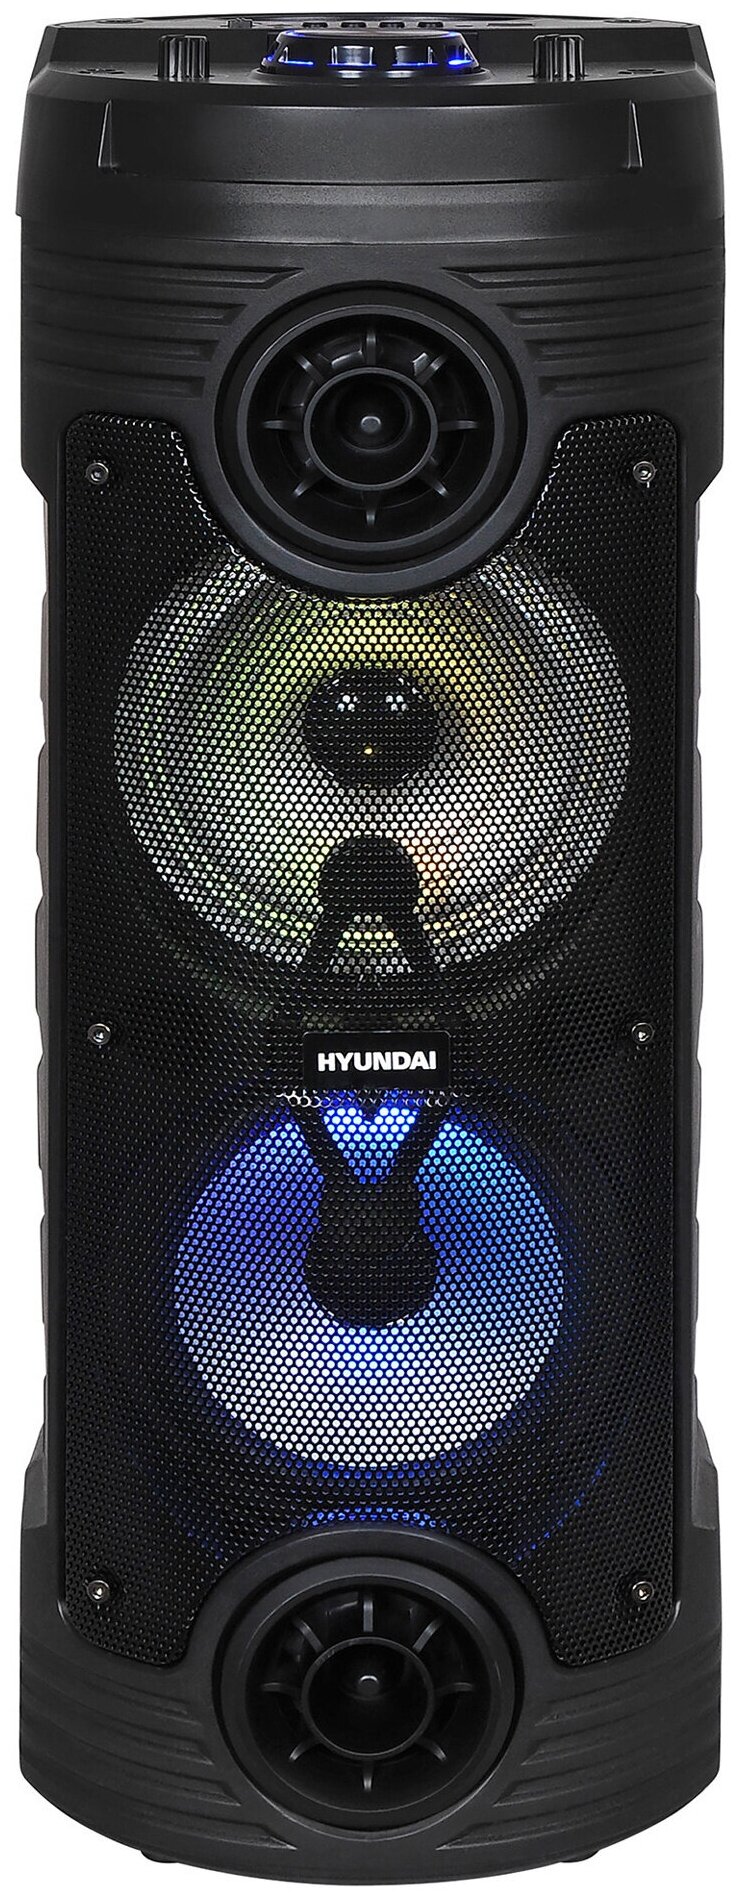 Минисистема Hyundai H-MC170 черный 80Вт FM USB BT SD/MMC